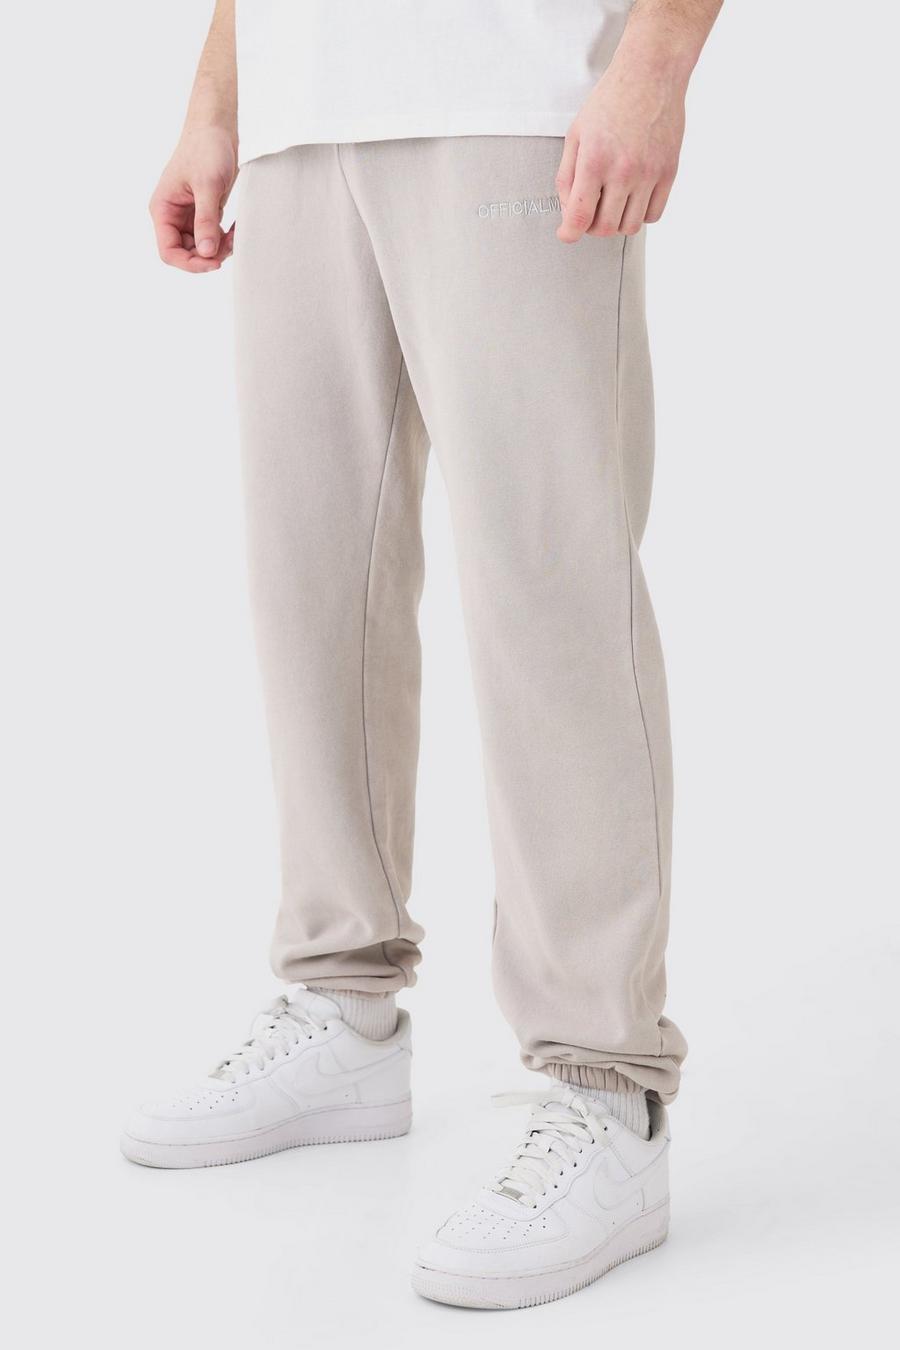 Pantaloni tuta Tall in lavaggio slavato Official Core Fit, Light grey